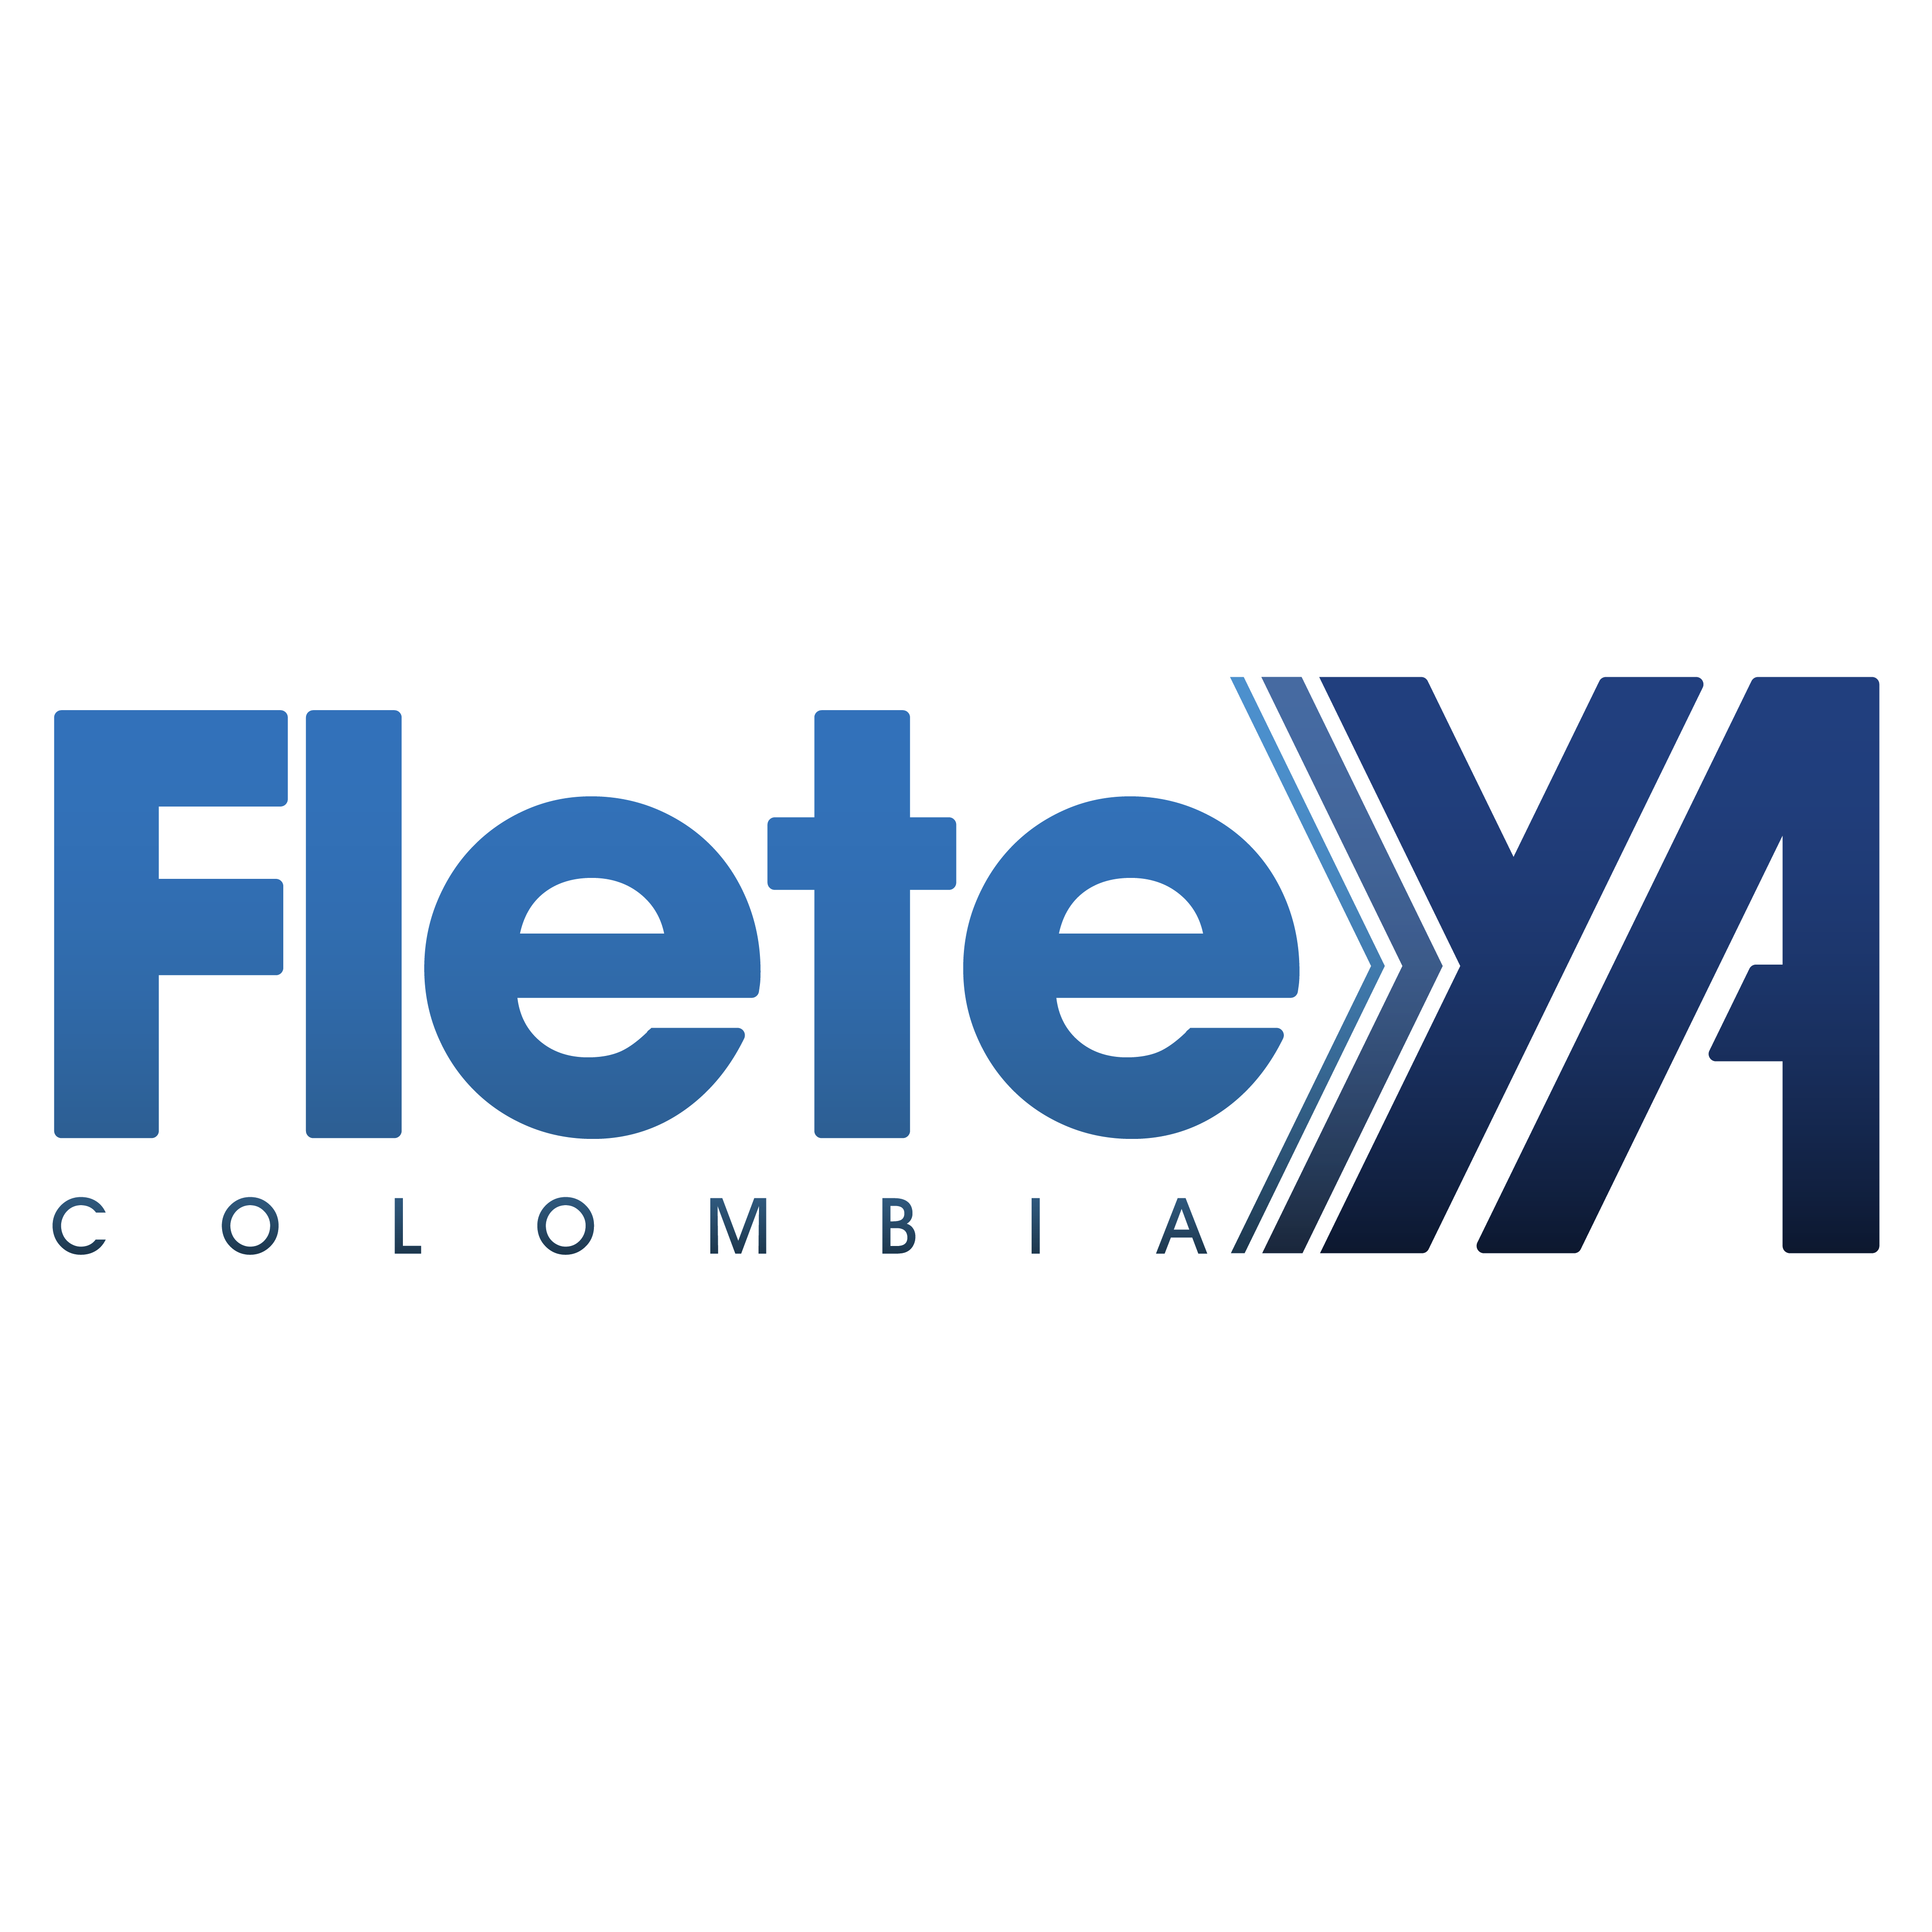 FleteYa Logo